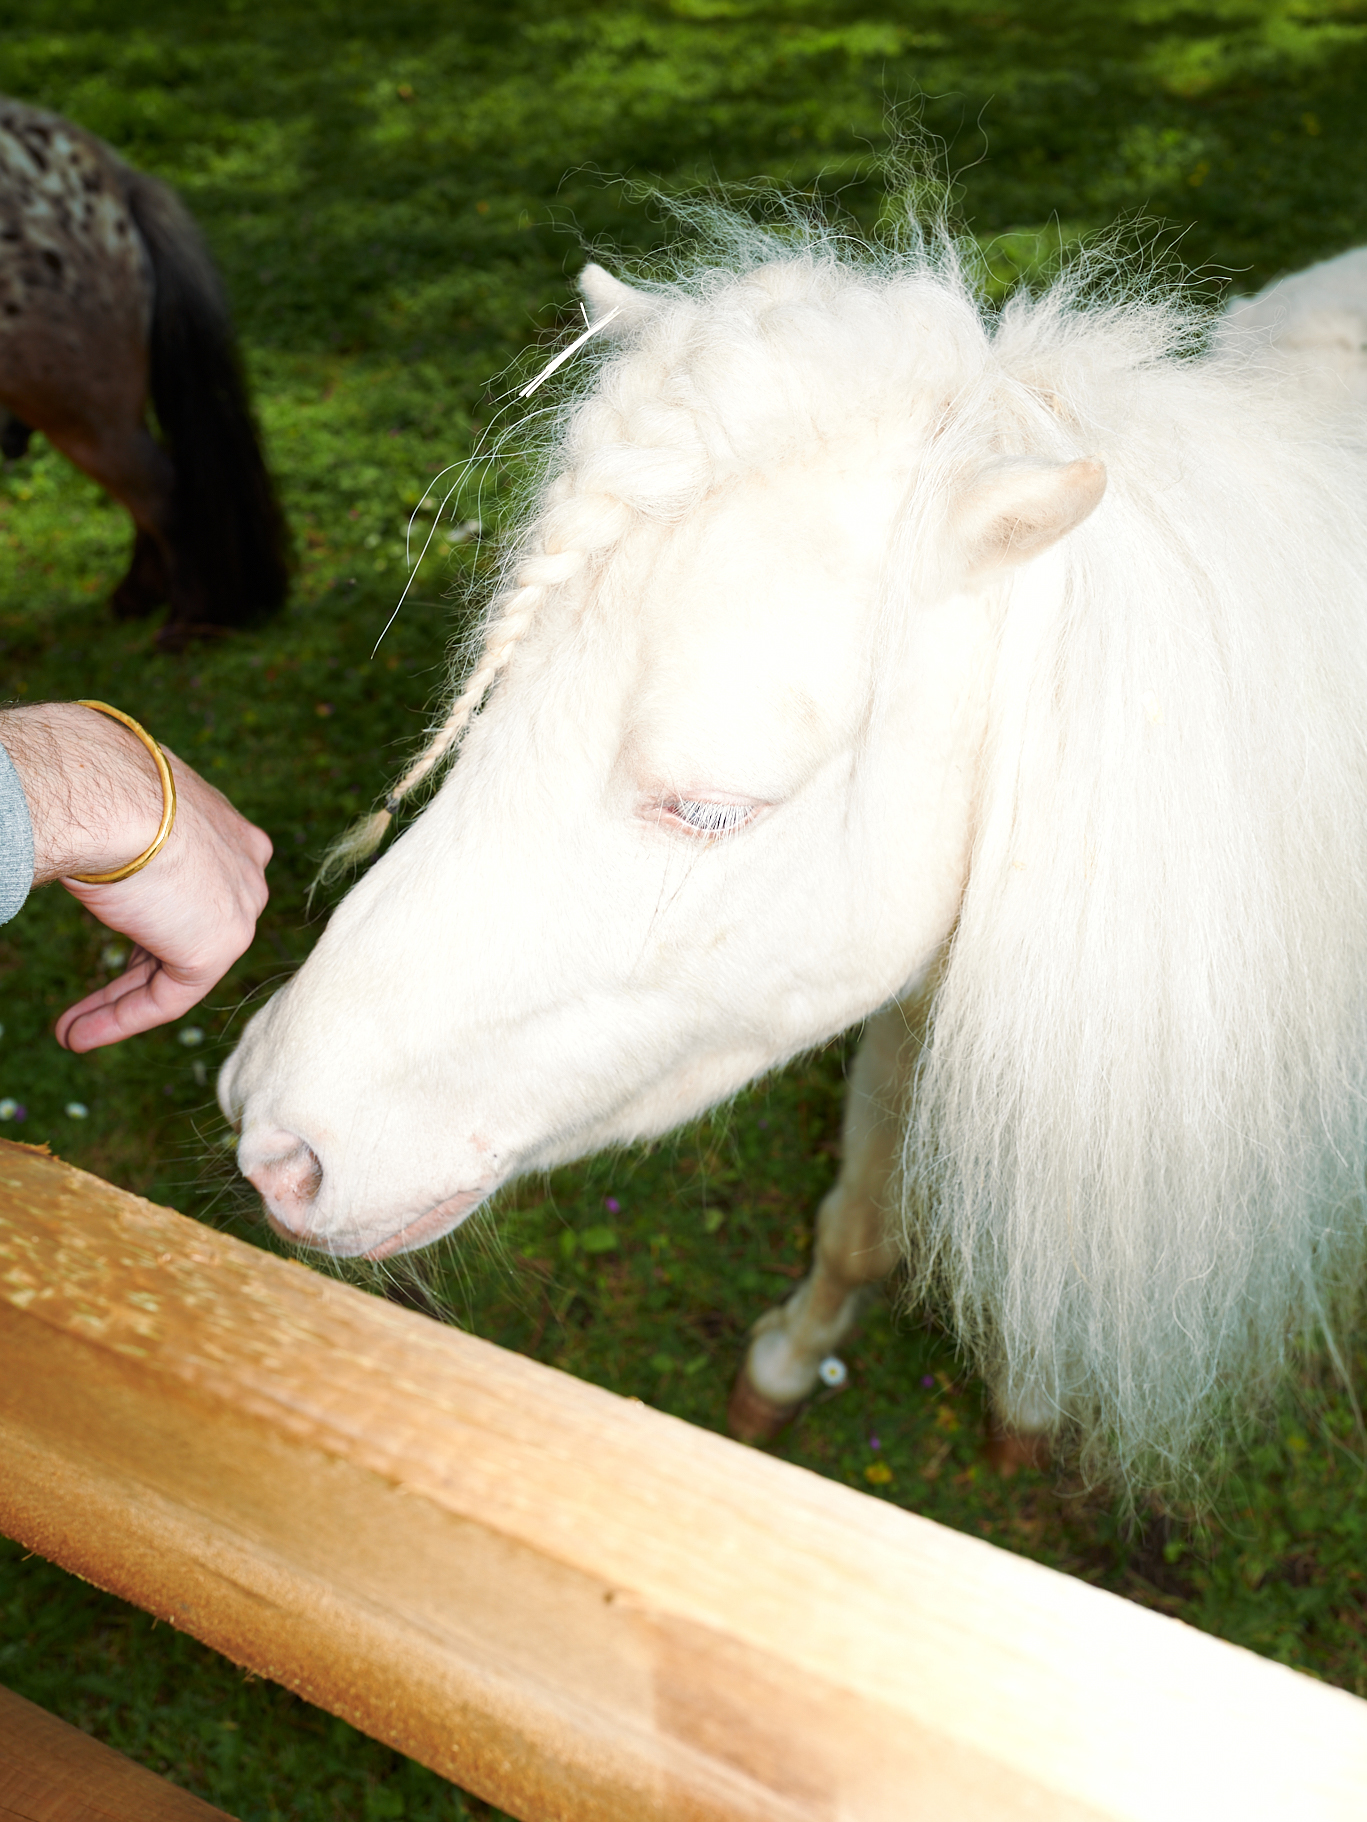 Cette photographie lifestyle montre une main avec un bracelet doré s'approchant de la tête d'un poney blanc à la crinière tressée. La barrière de l'enclos est visible à l'avant-plan. Cette photo saisit un moment d'intimité entre l'humain et l'animal, capturant leur proximité physique et leur lien émotionnel.